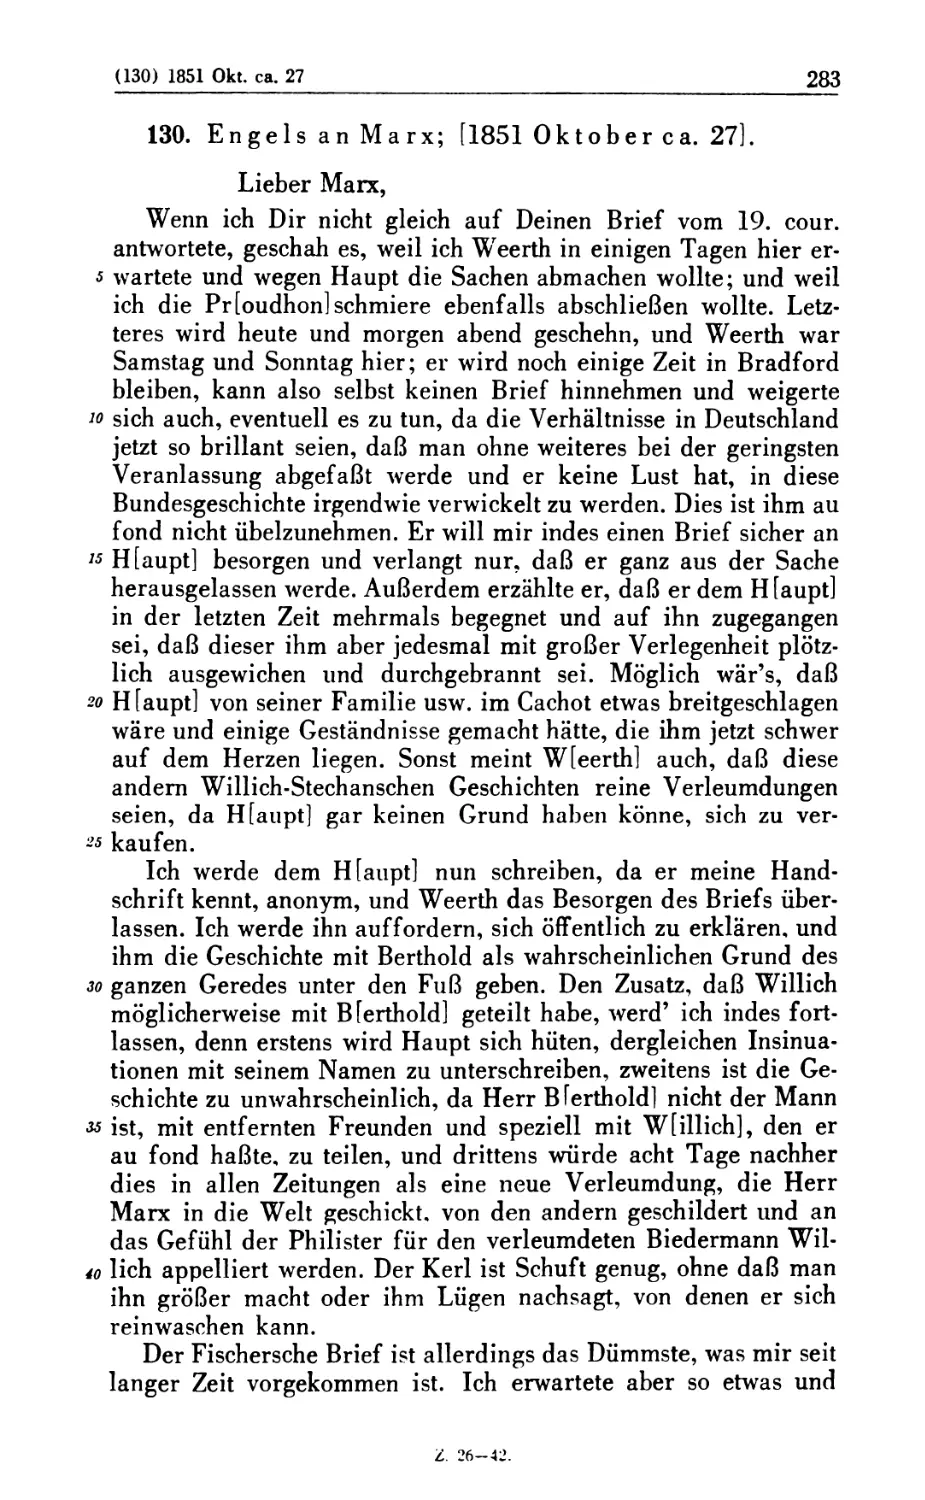 130. Engels an Marx; [1851 Oktober ca. 27]